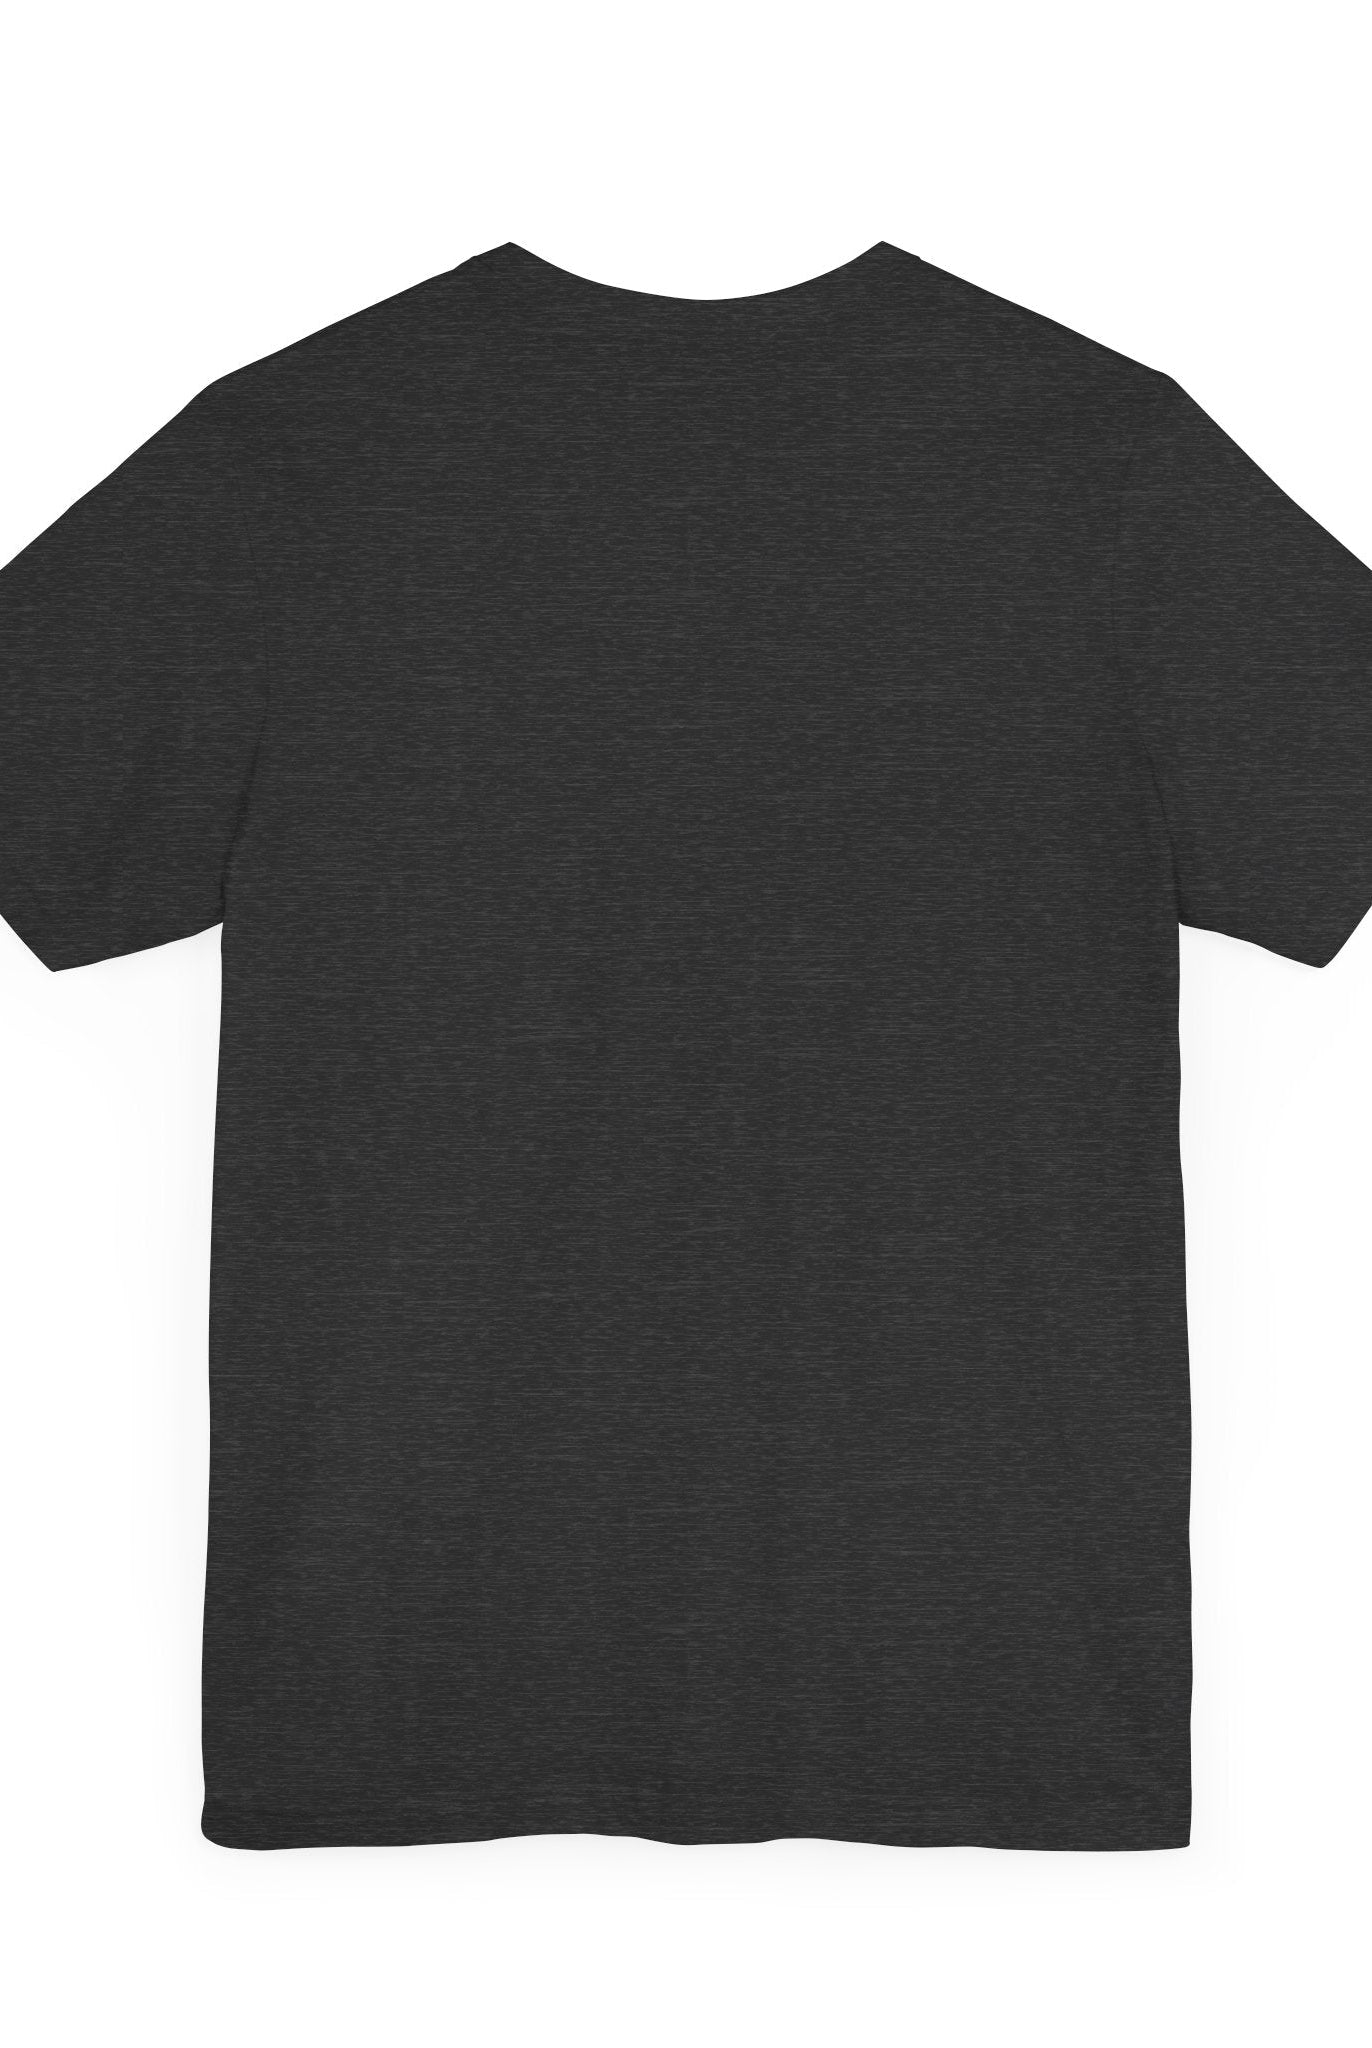 Black t shirt with white logo on chest - Be Amazing printed design - Soulshinecreators Unisex item